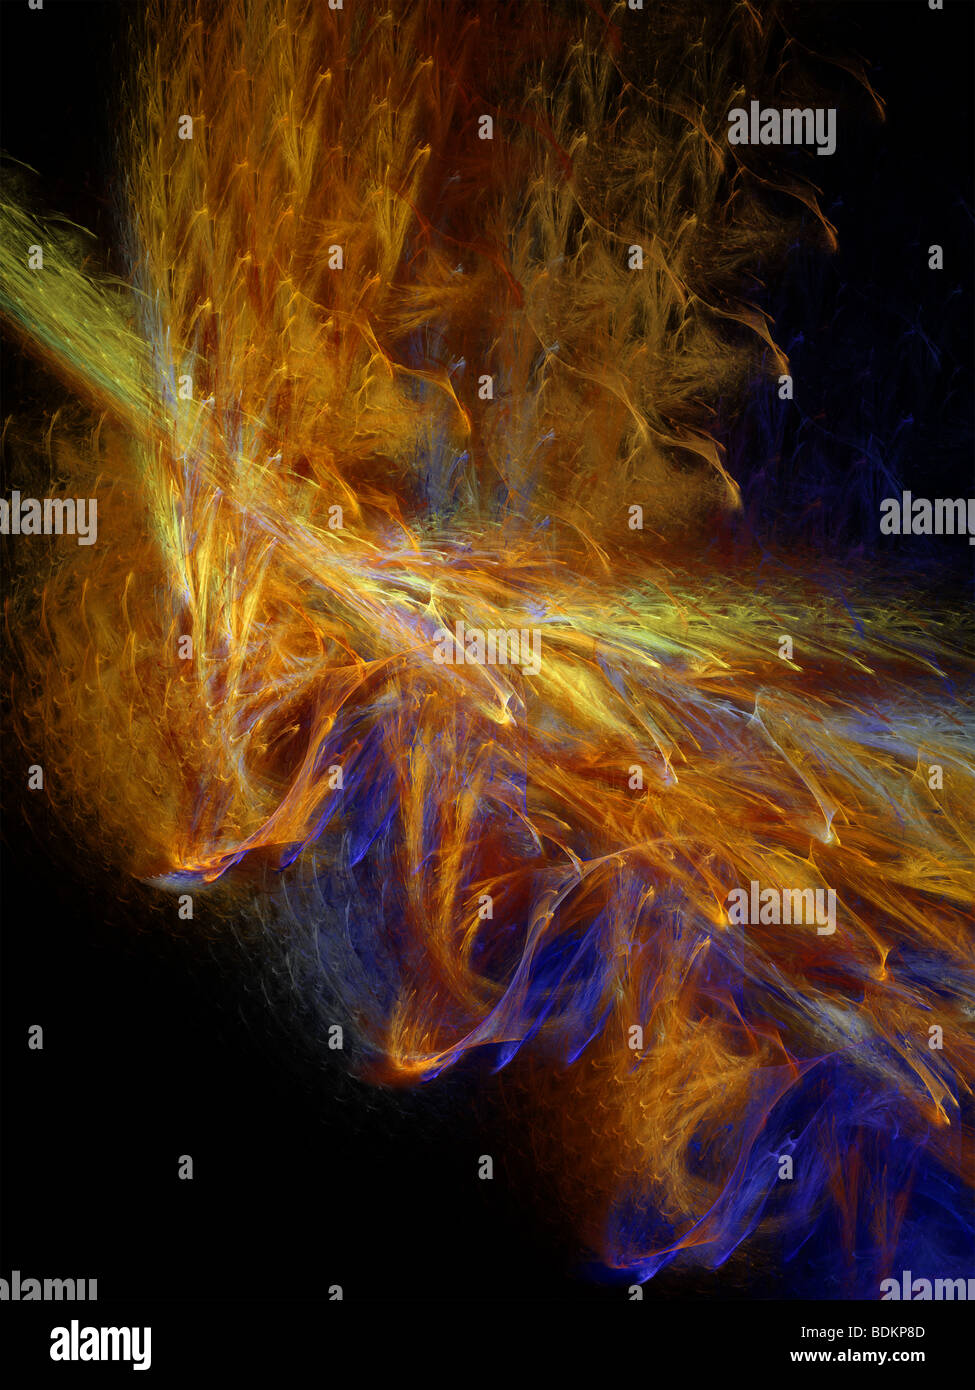 Image générée par ordinateur d'une fractale de flammes. Flammes fractales sont membre de la fonction itérée classe système de fractals Banque D'Images